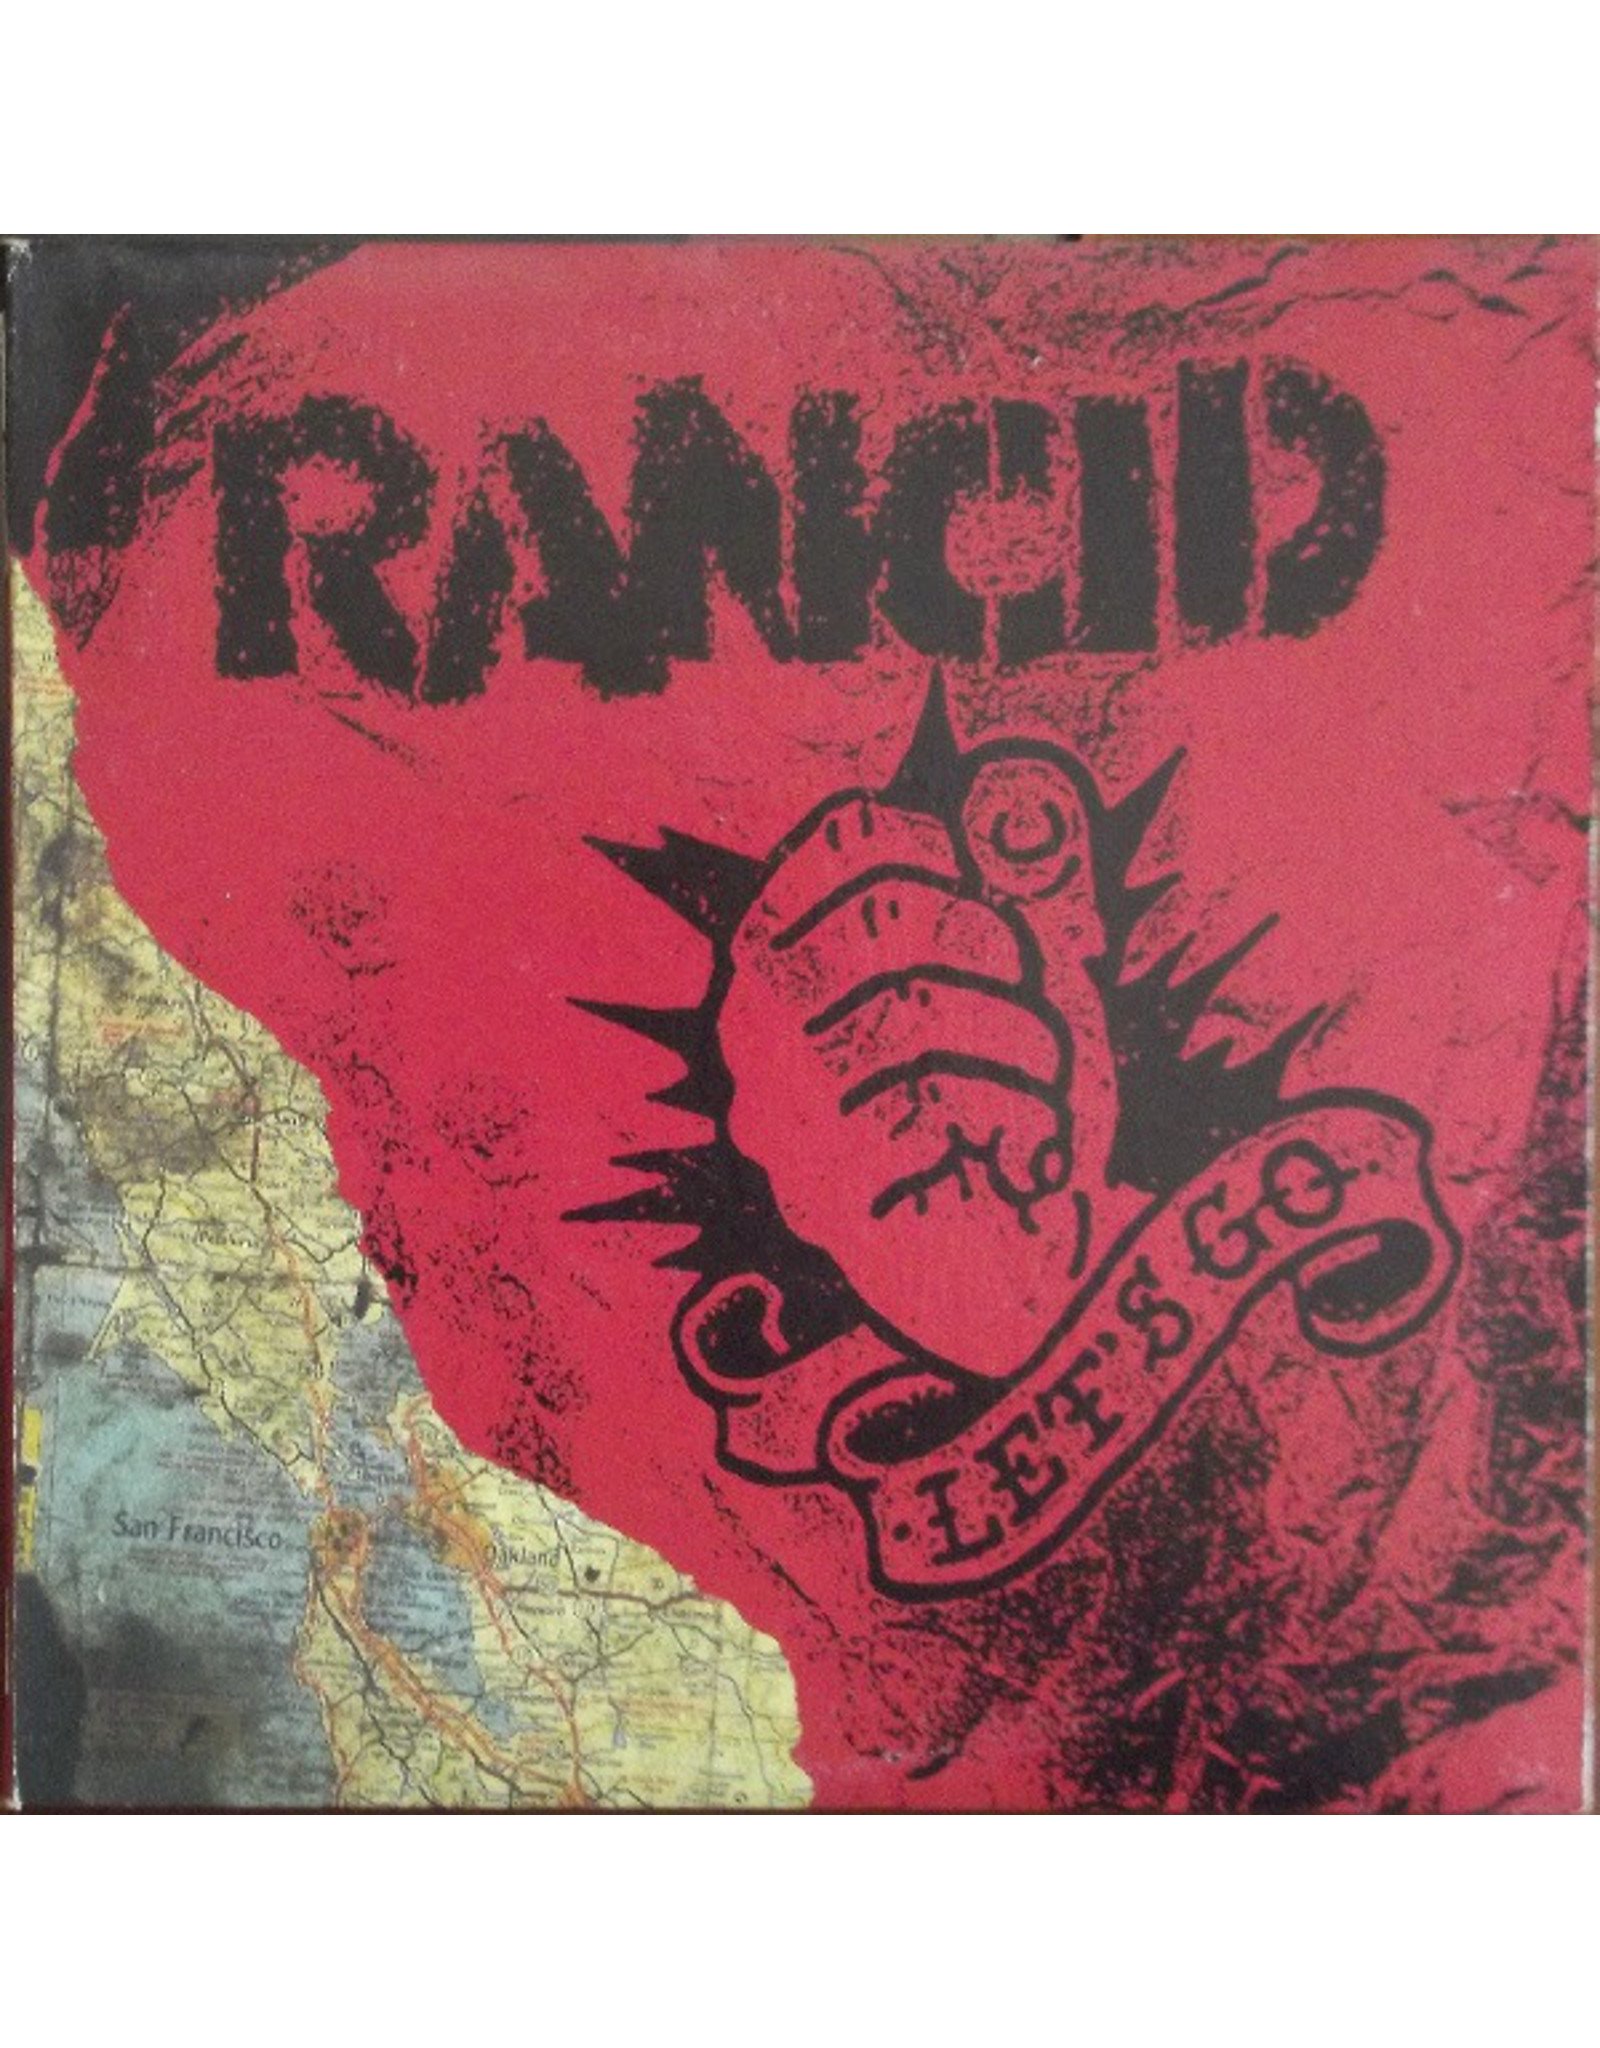 New Vinyl Rancid - Let's Go LP